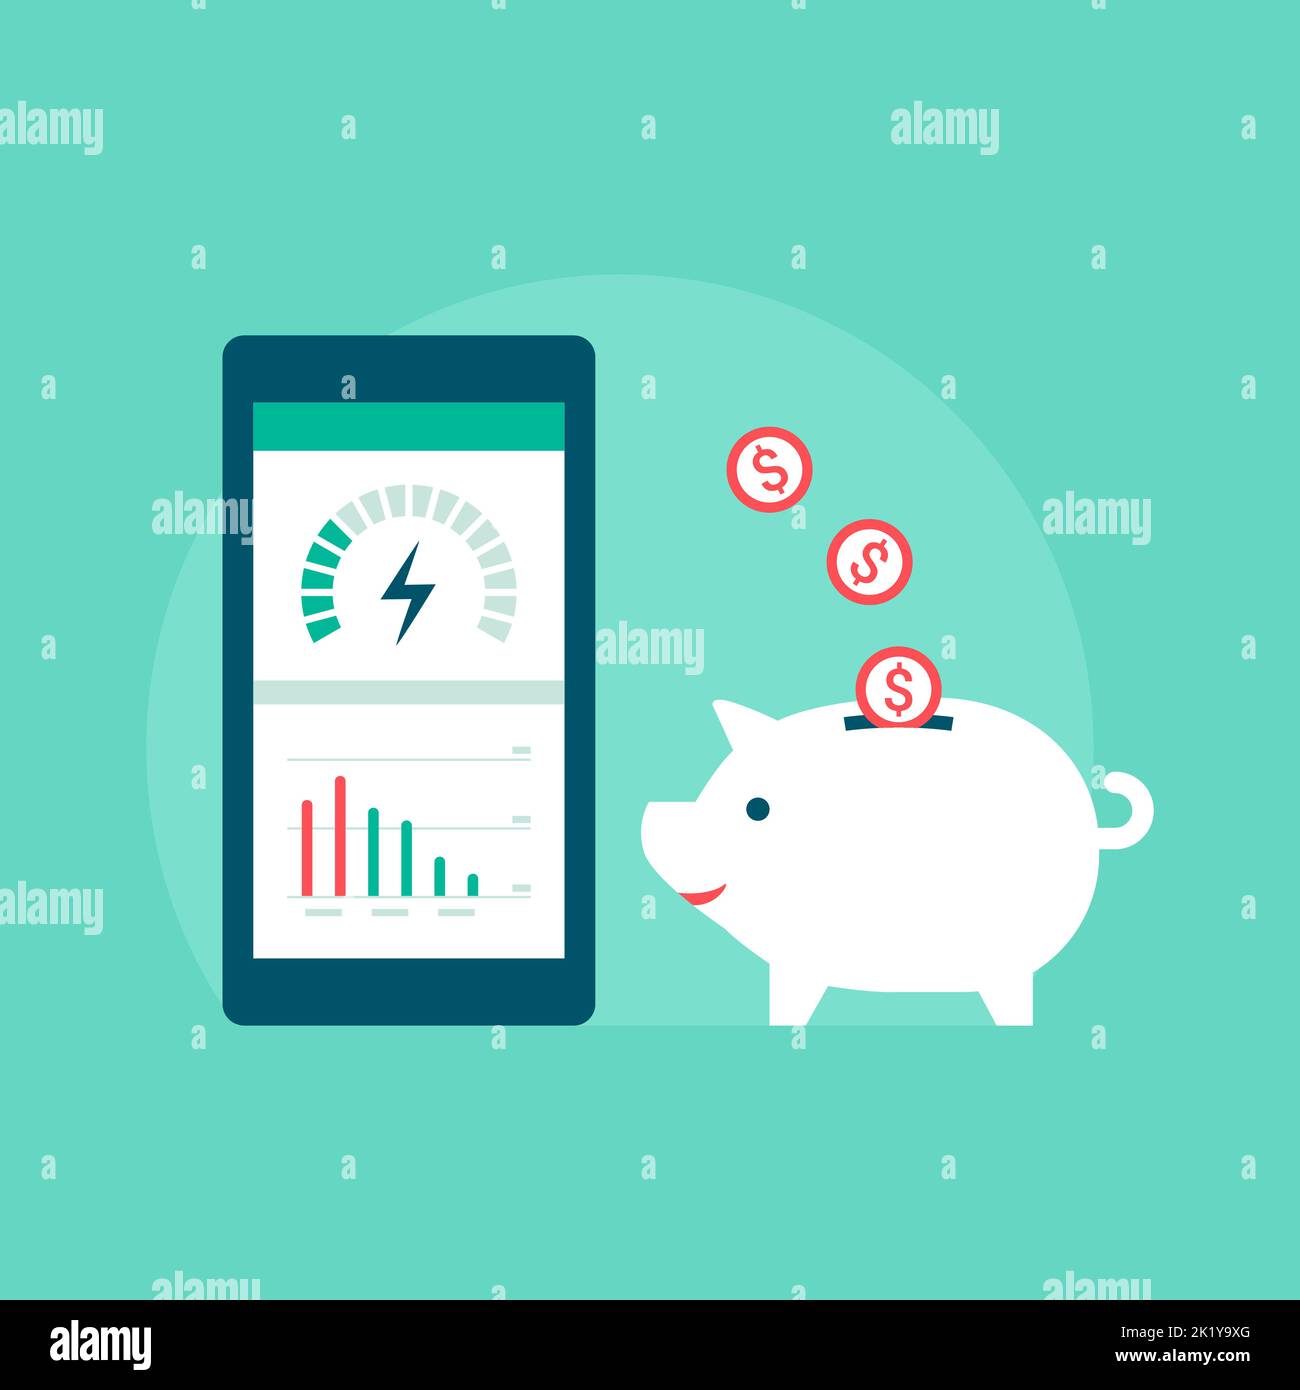 Sparen Sie Geld auf Ihrer Stromrechnung: Energieeffizienz-App auf dem Smartphone und Münzen, die in ein Sparschwein fallen Stock Vektor